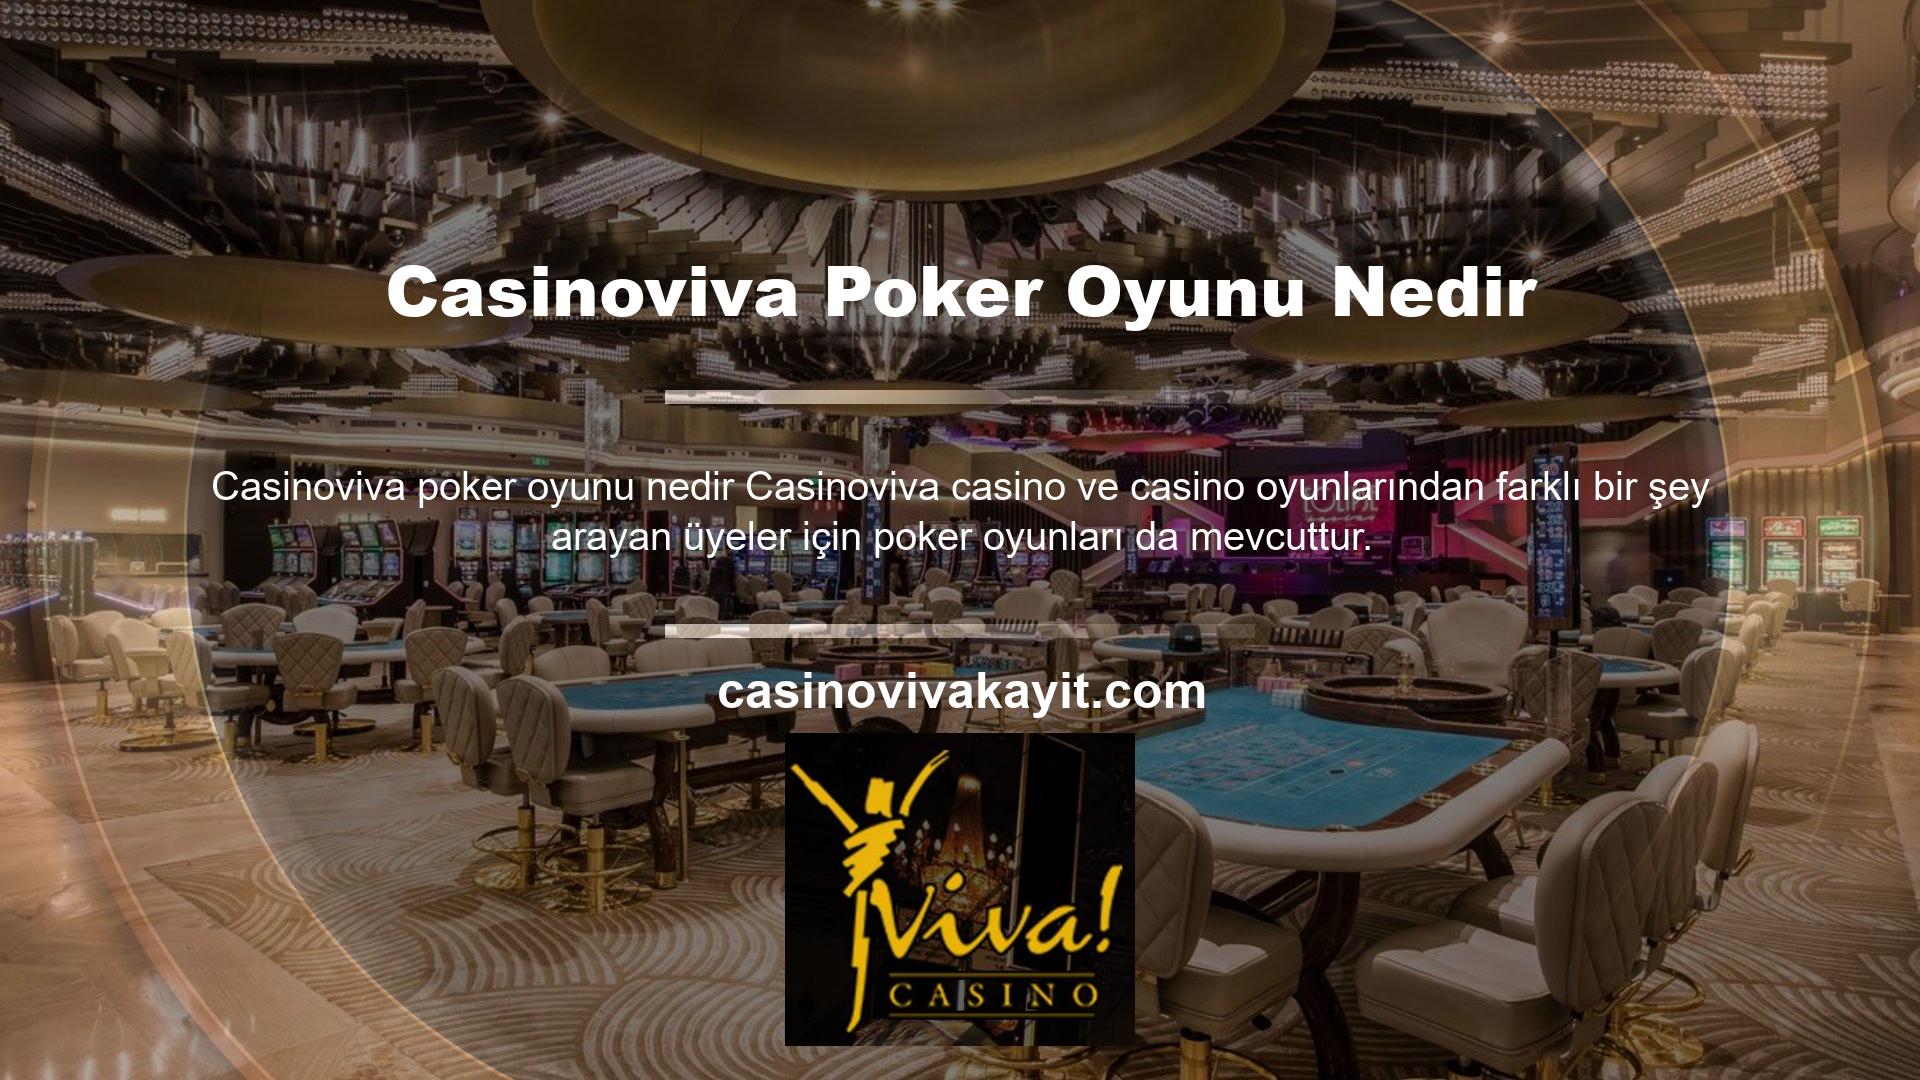 Casinoviva, poker bölümünde 7 farklı seçenek sunarak bu ve diğer temalarda birçok varyasyon sunar